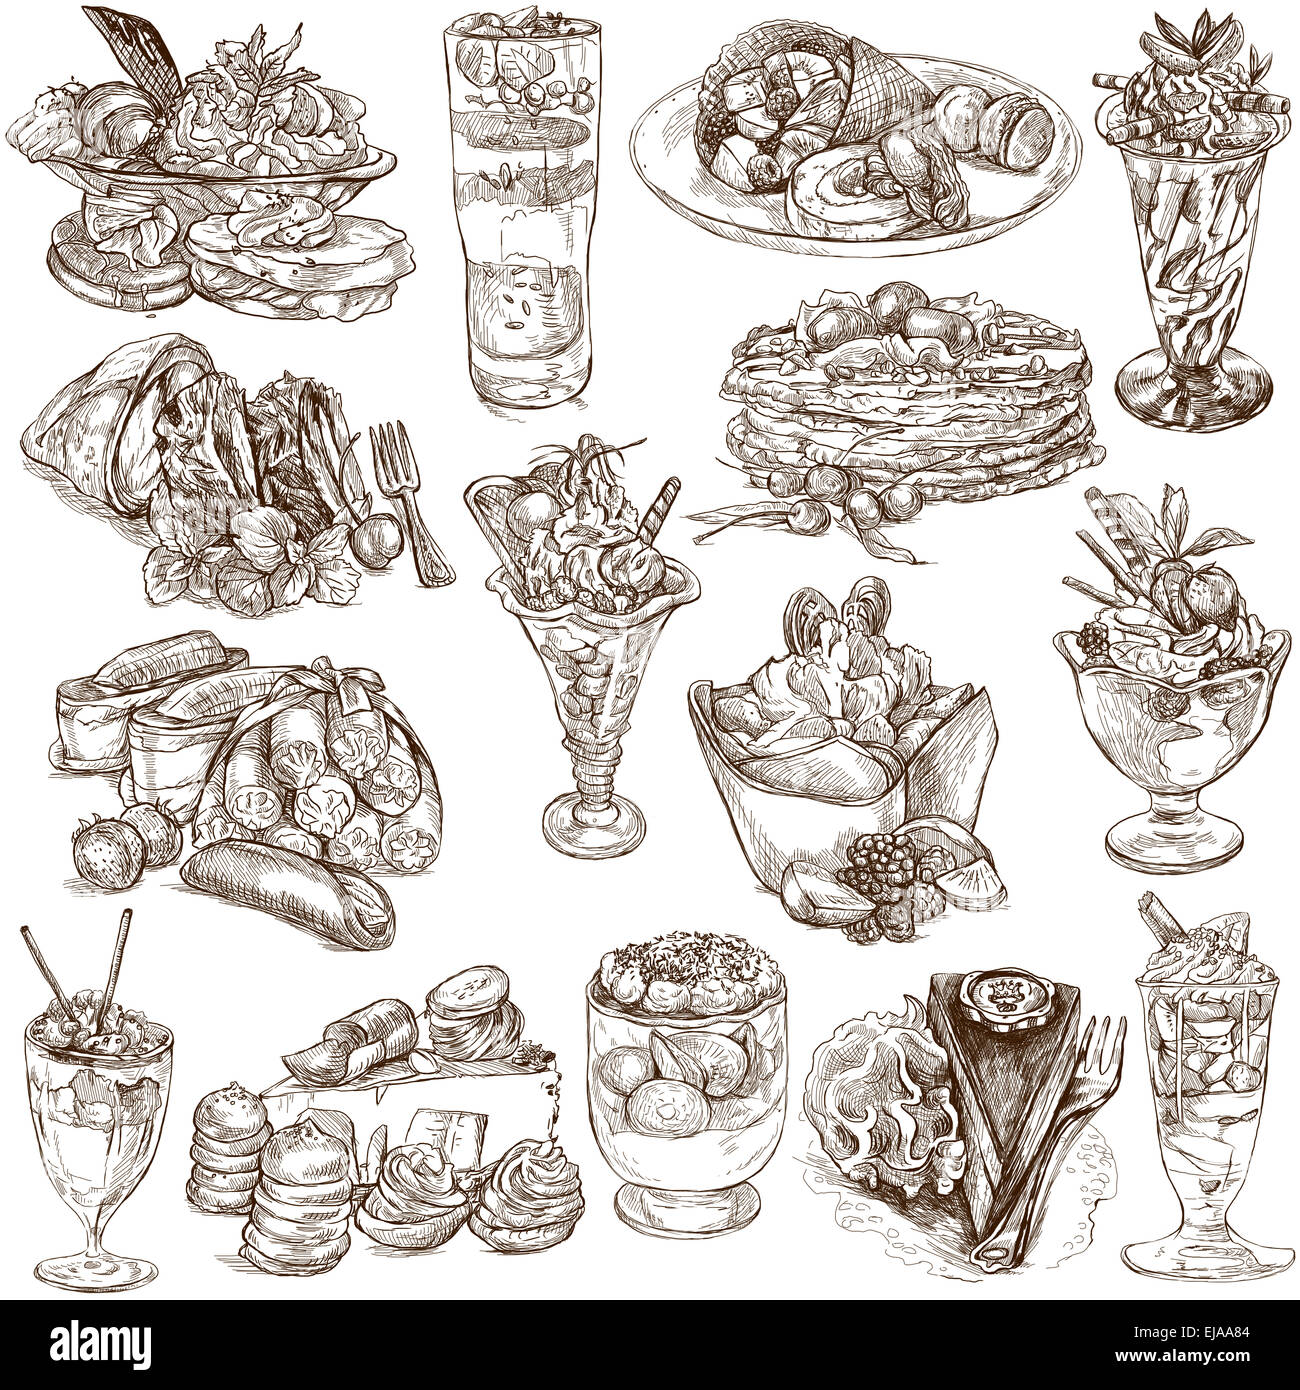 Eine handgezeichnete volle Größe Illustratons aus der Serie Essen auf der ganzen Welt: süße, Süßigkeiten, Kuchen Stockfoto